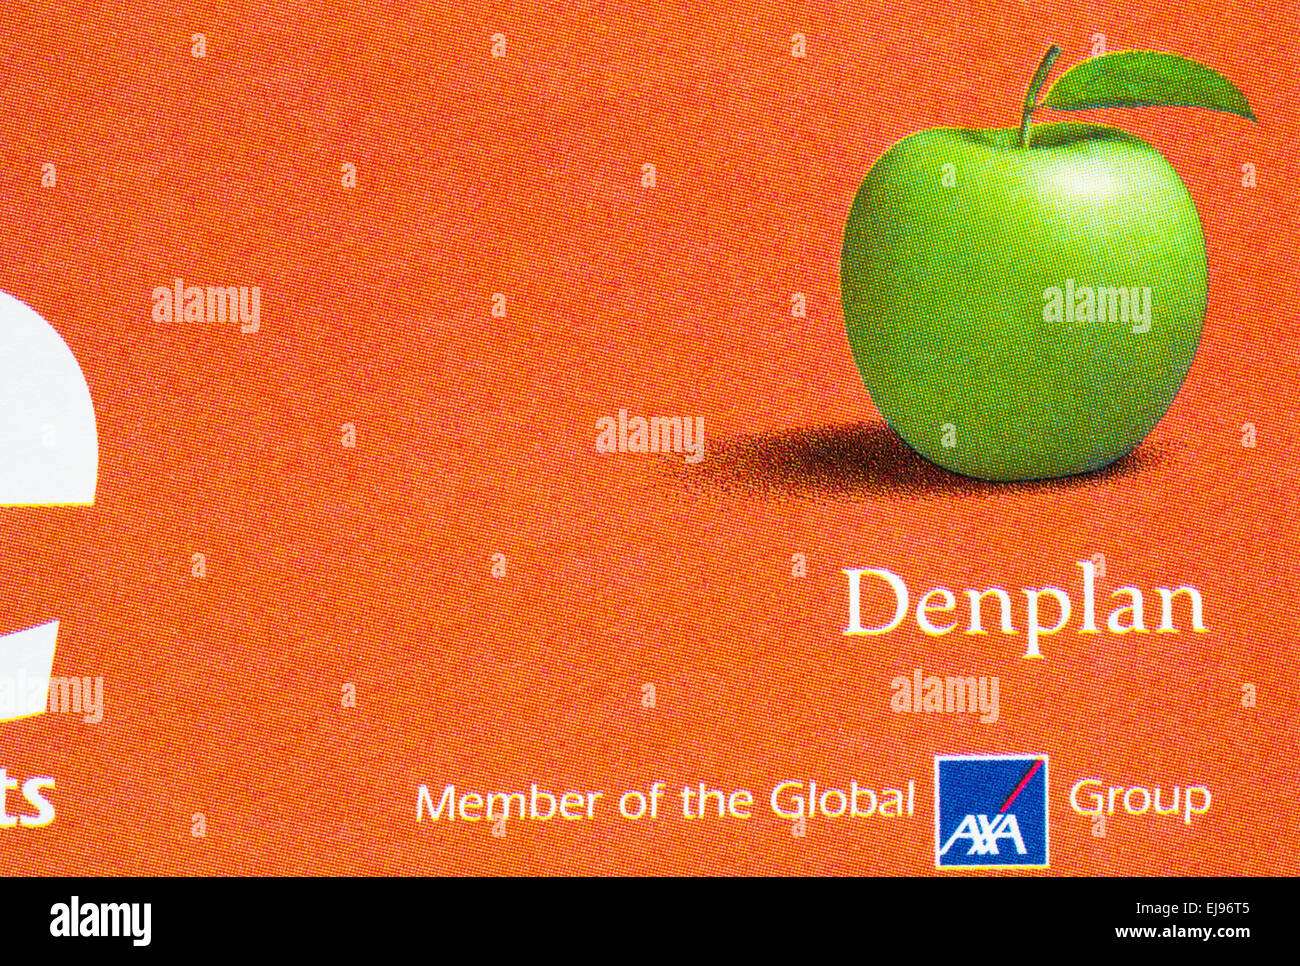 Elemento Denplan globale del Gruppo AXA logo sulla letteratura Foto Stock